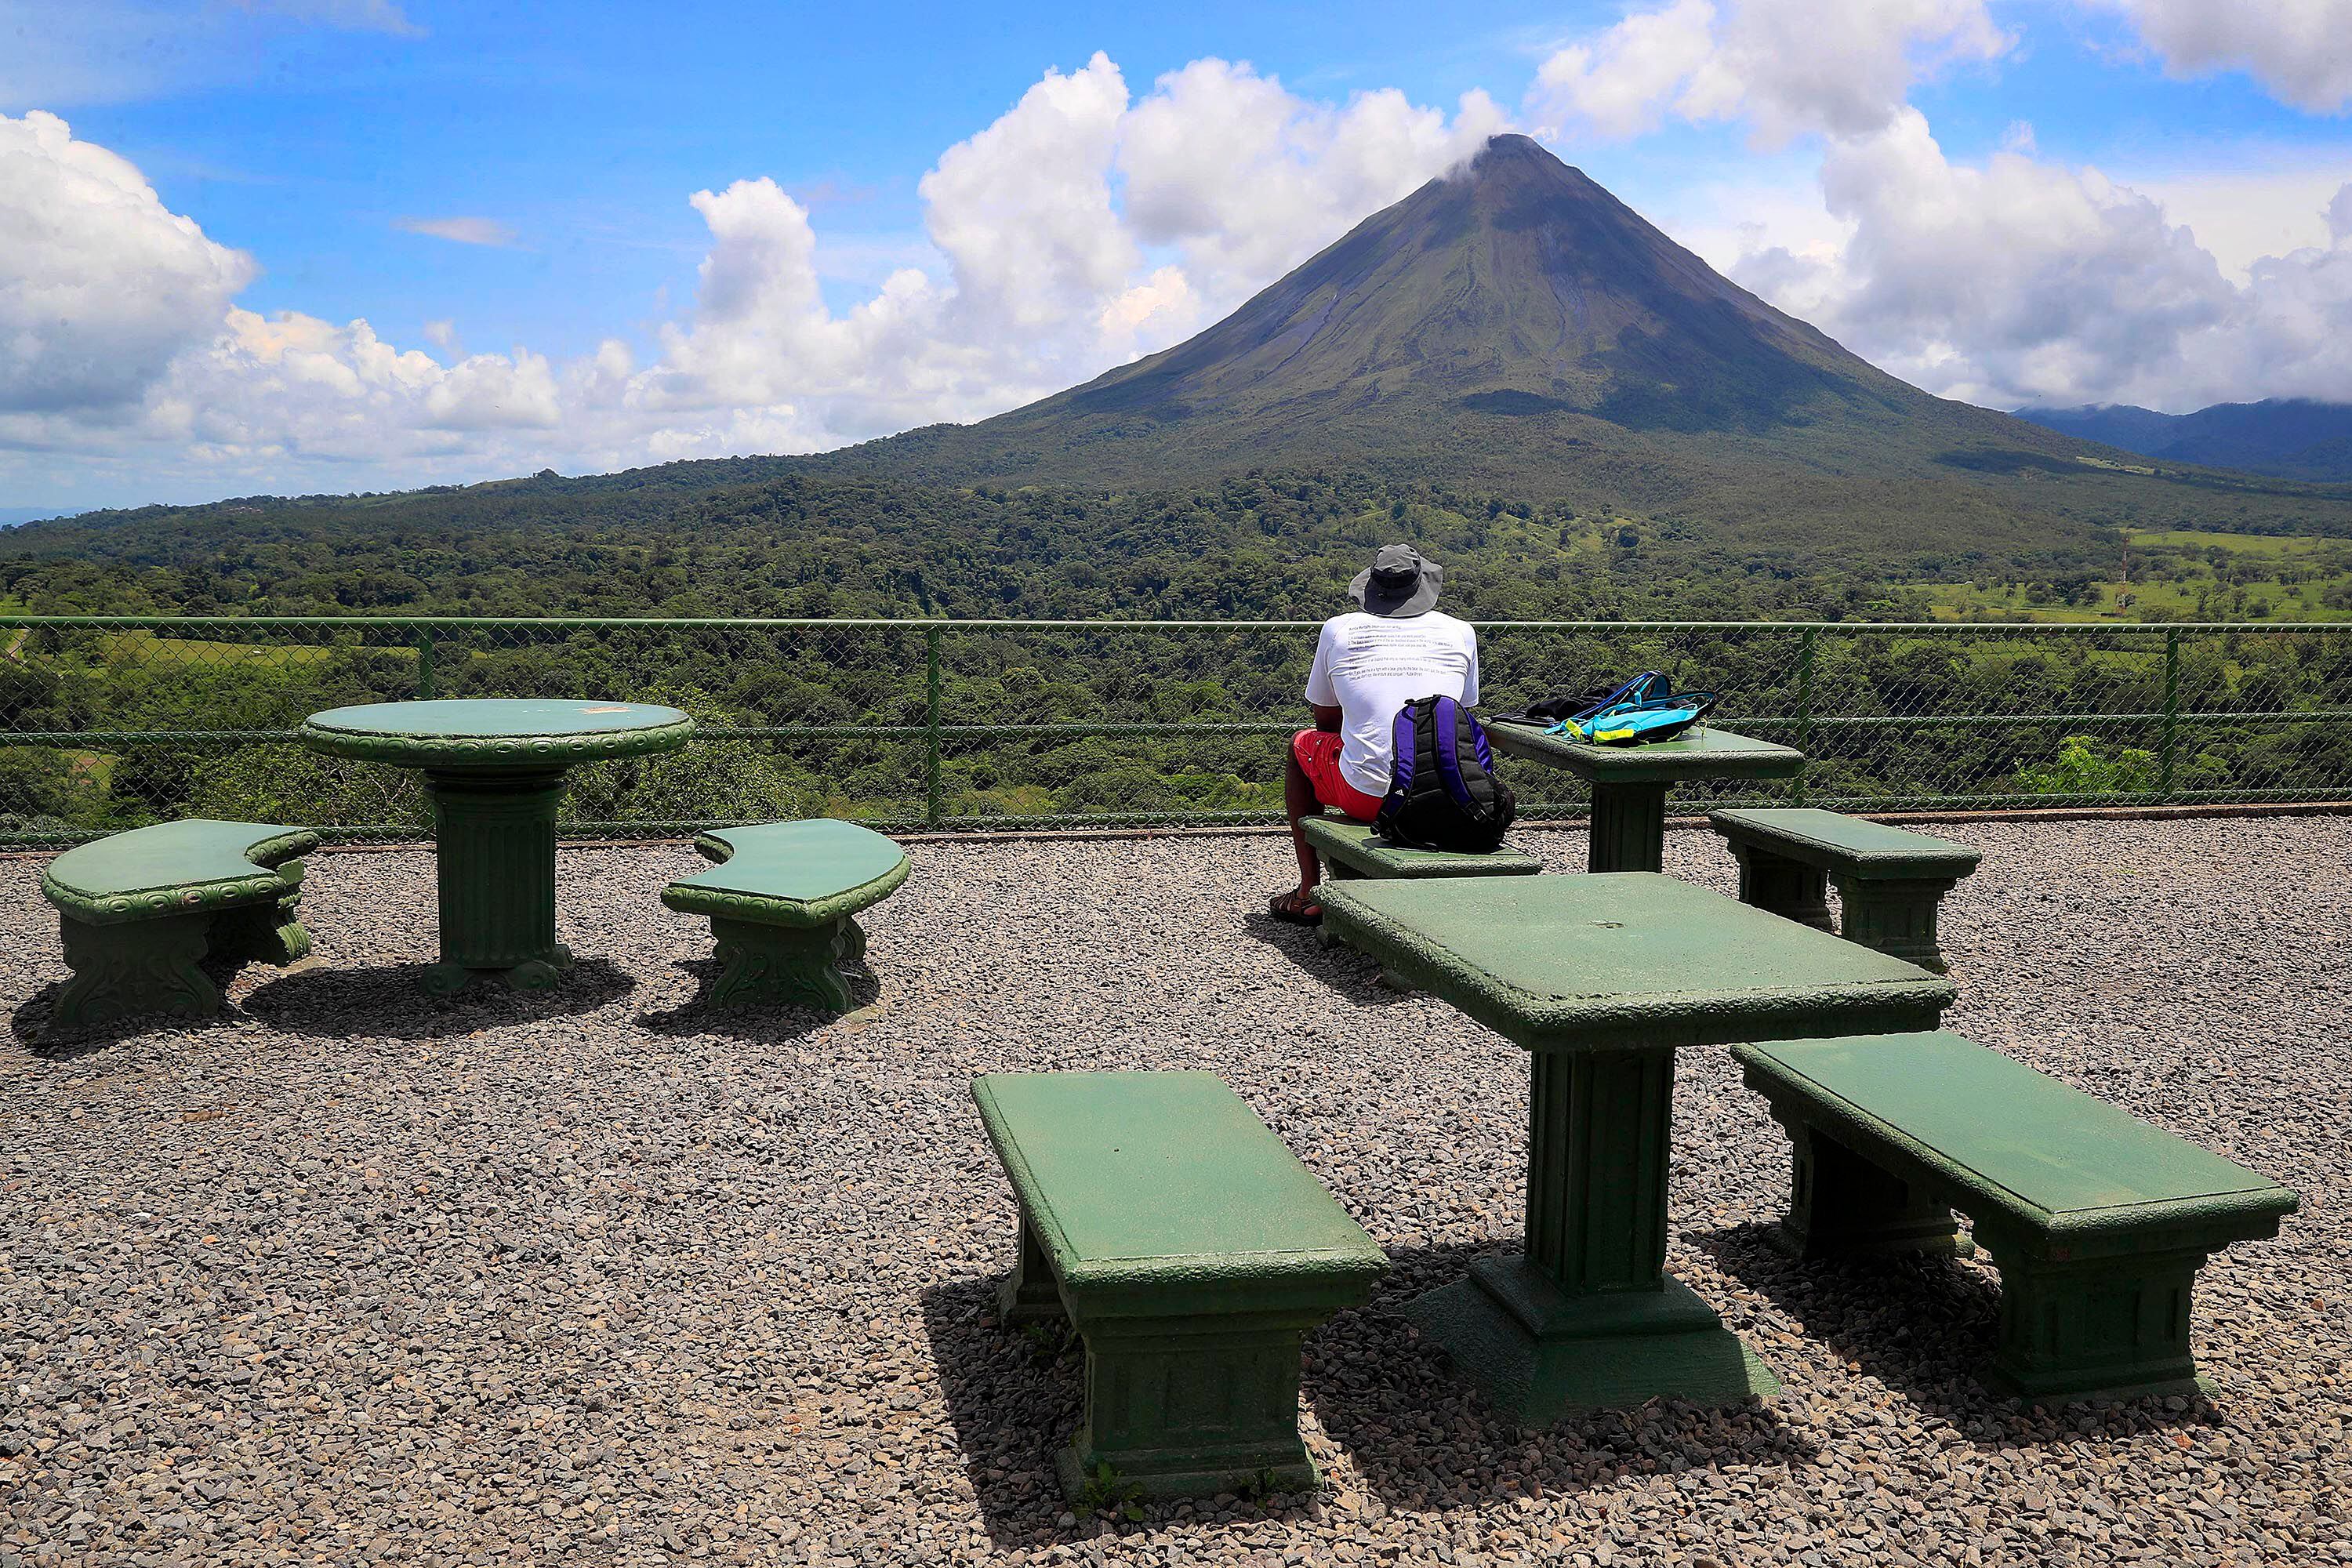 Tres de los hoteles costarricenses están ubicados en torno al volcán Arenal, una de las joyas turísticas de Costa Rica.